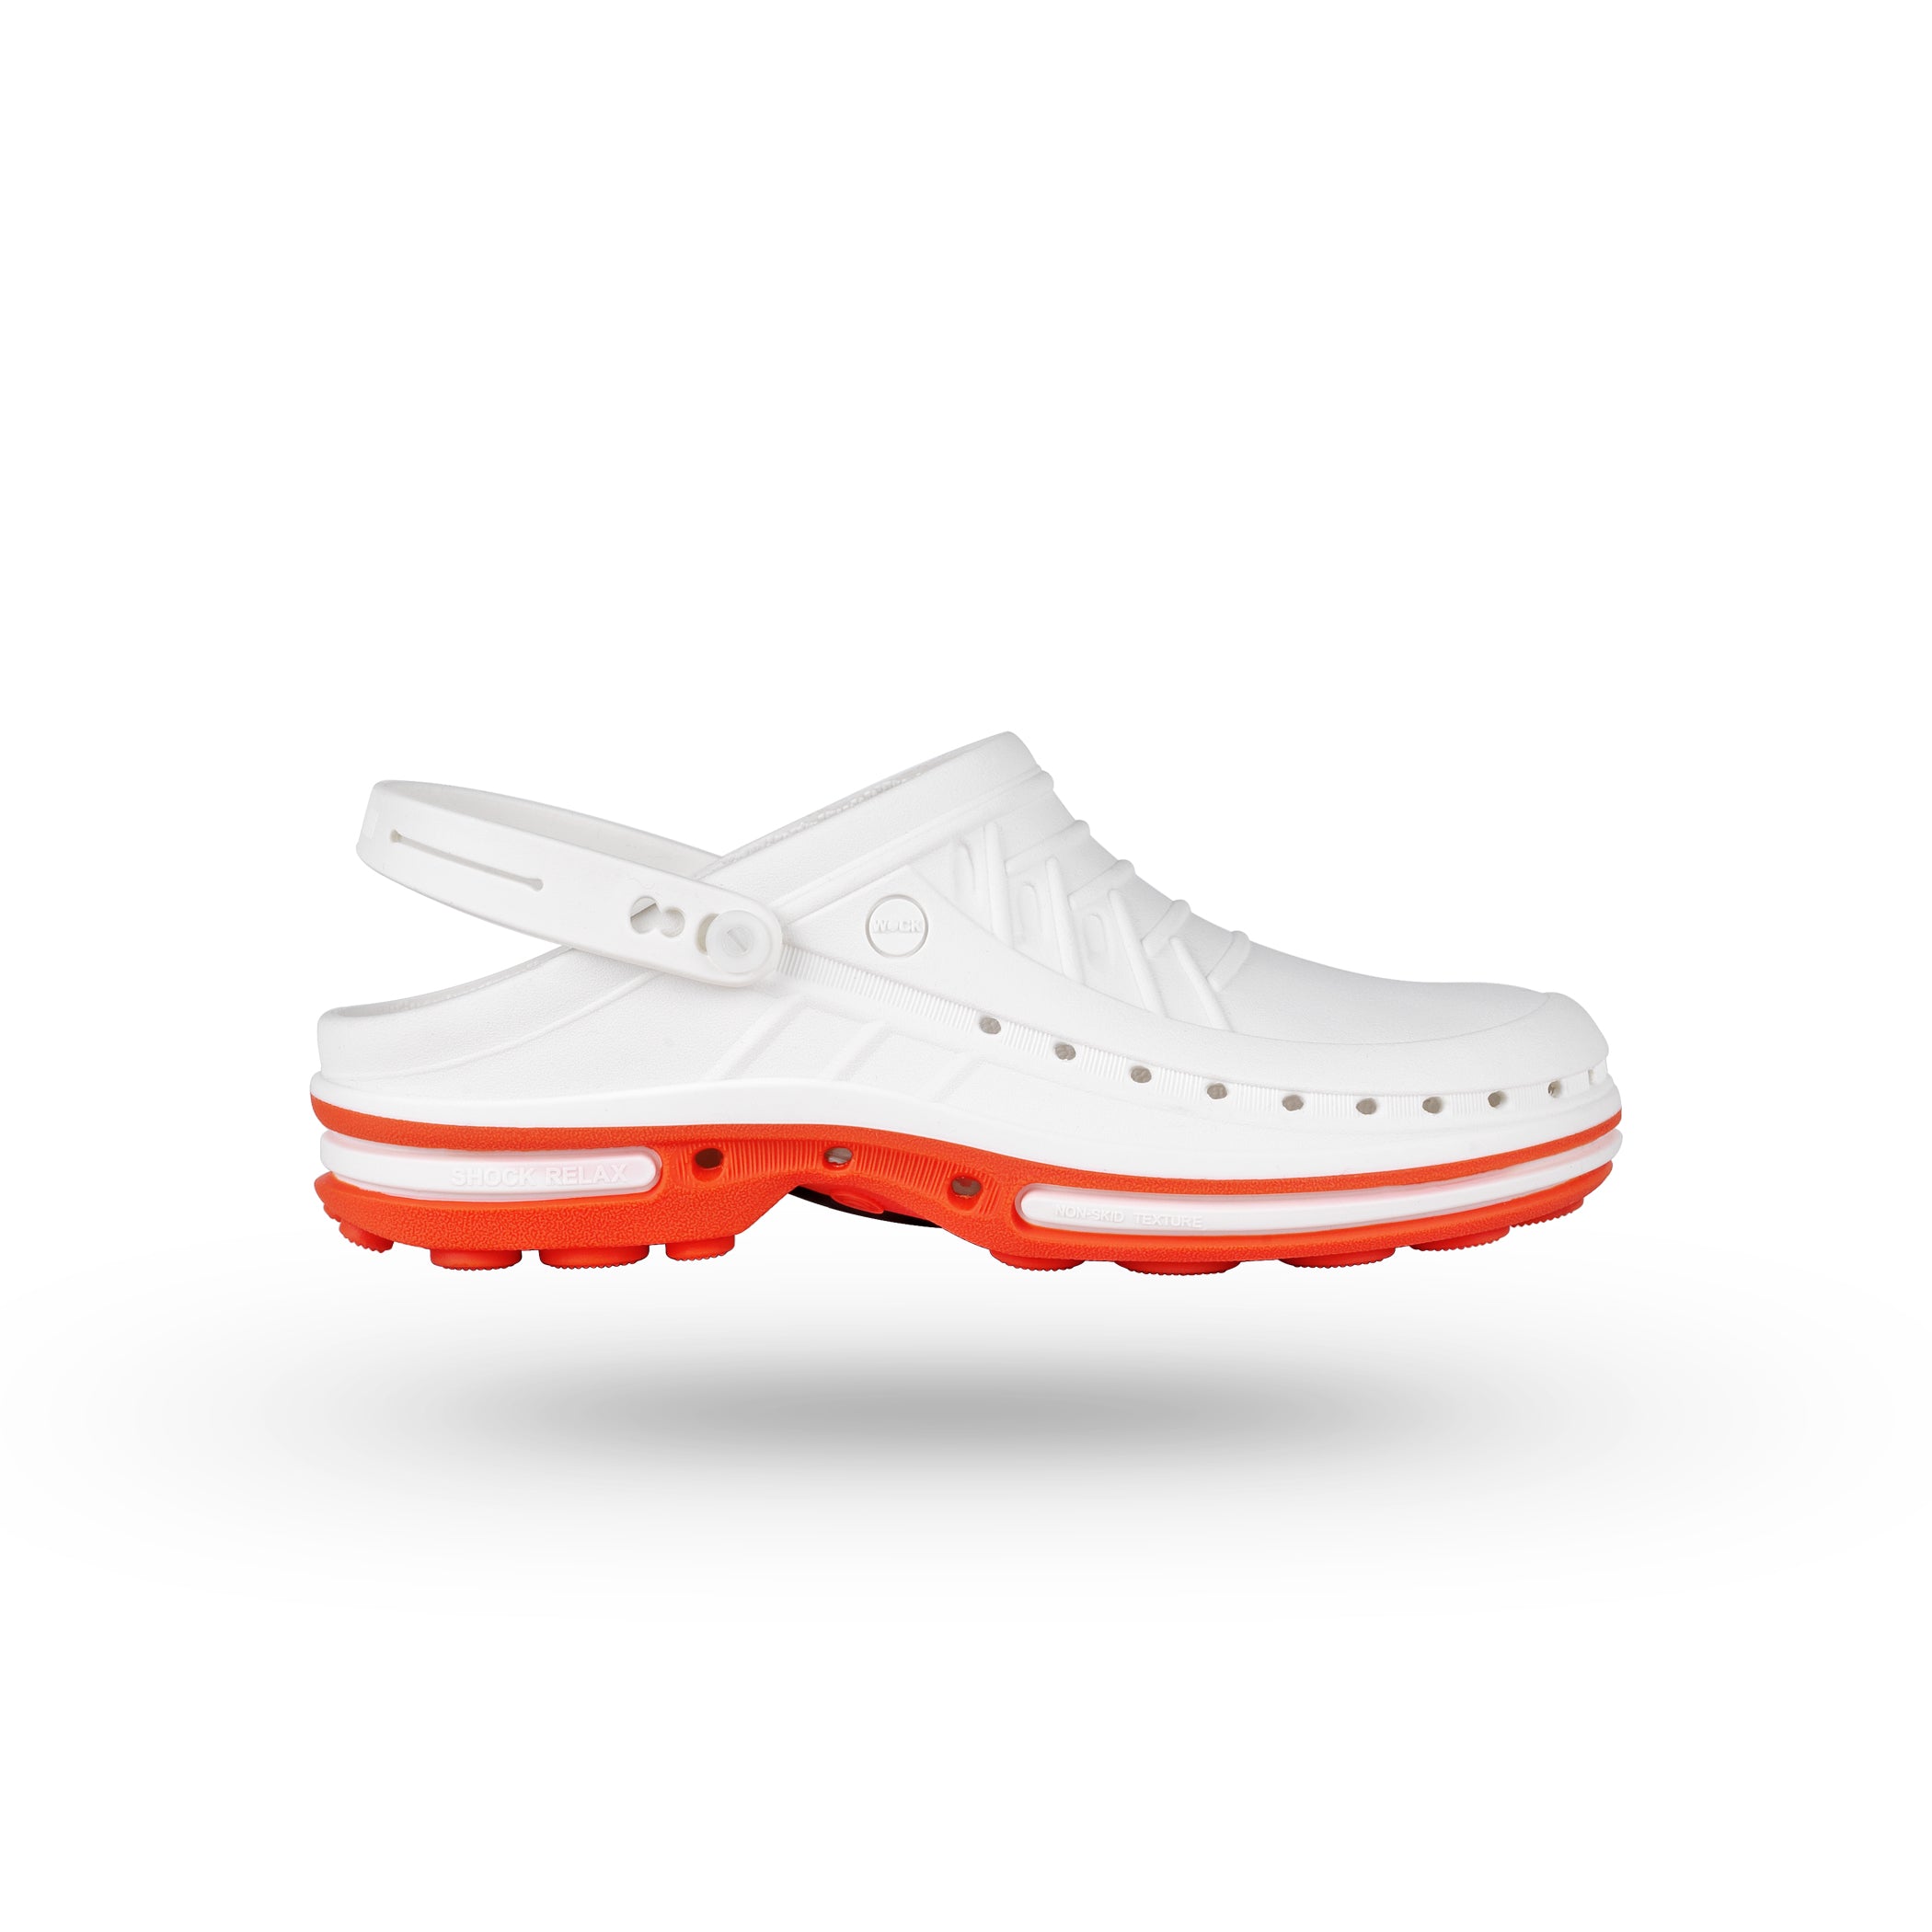 CLOG zoccoli autoclavabili#colore_01-bianco-arancio